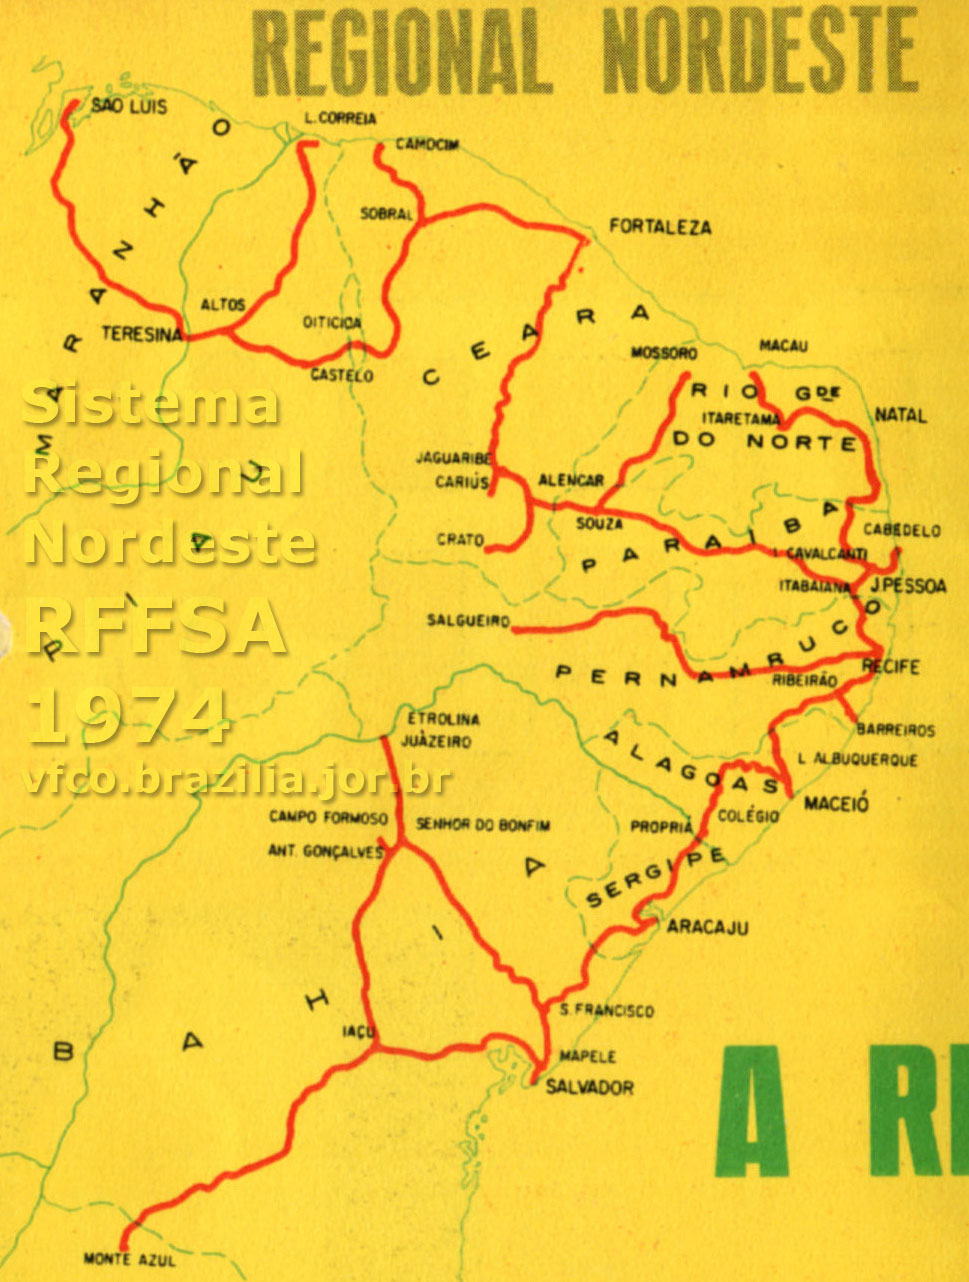 Mapa dos trilhos do Sistema Regional Nordeste da RFFSA - Rede Ferroviária Federal em 1974